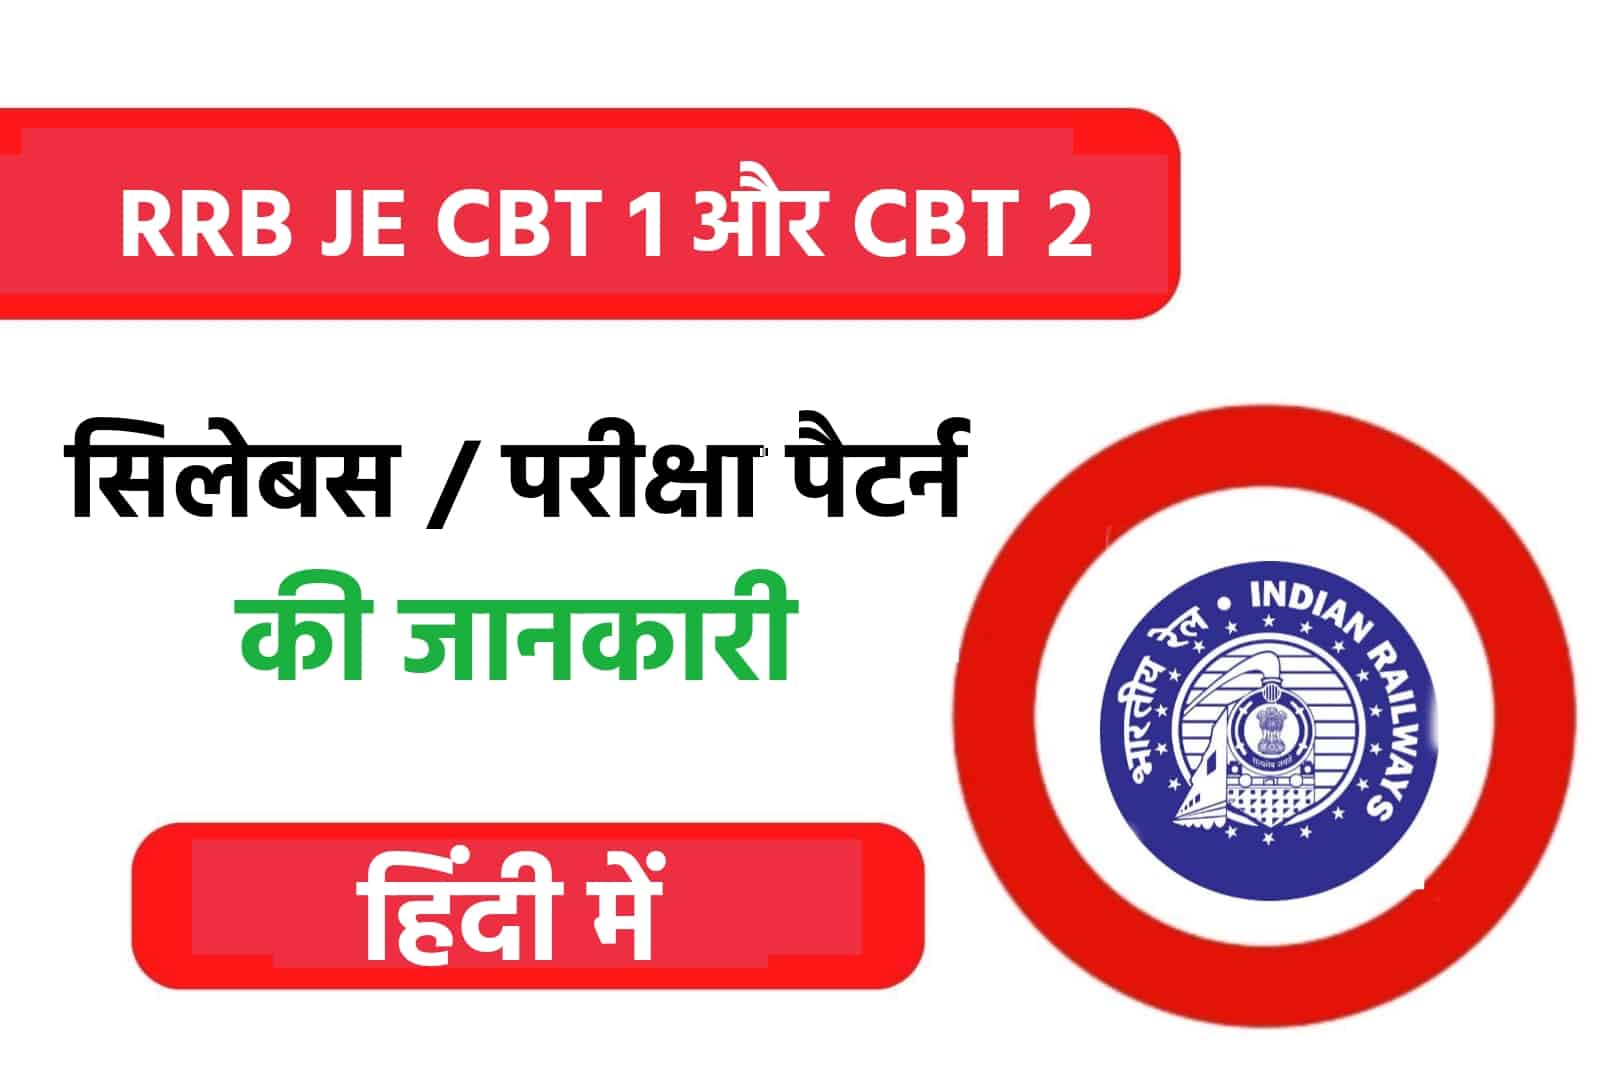 RRB JE Syllabus In Hindi | हिंदी में जानें CBT- 1 और CBT- 2 का सिलेबस और परीक्षा पैटर्न